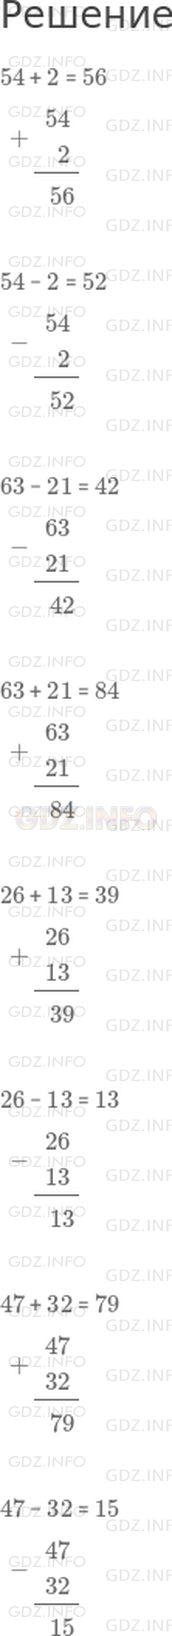 Фото решения 1: Урок 5 №6, Часть 1 из ГДЗ по Математике 2 класс: Петерсон Л.Г. г.